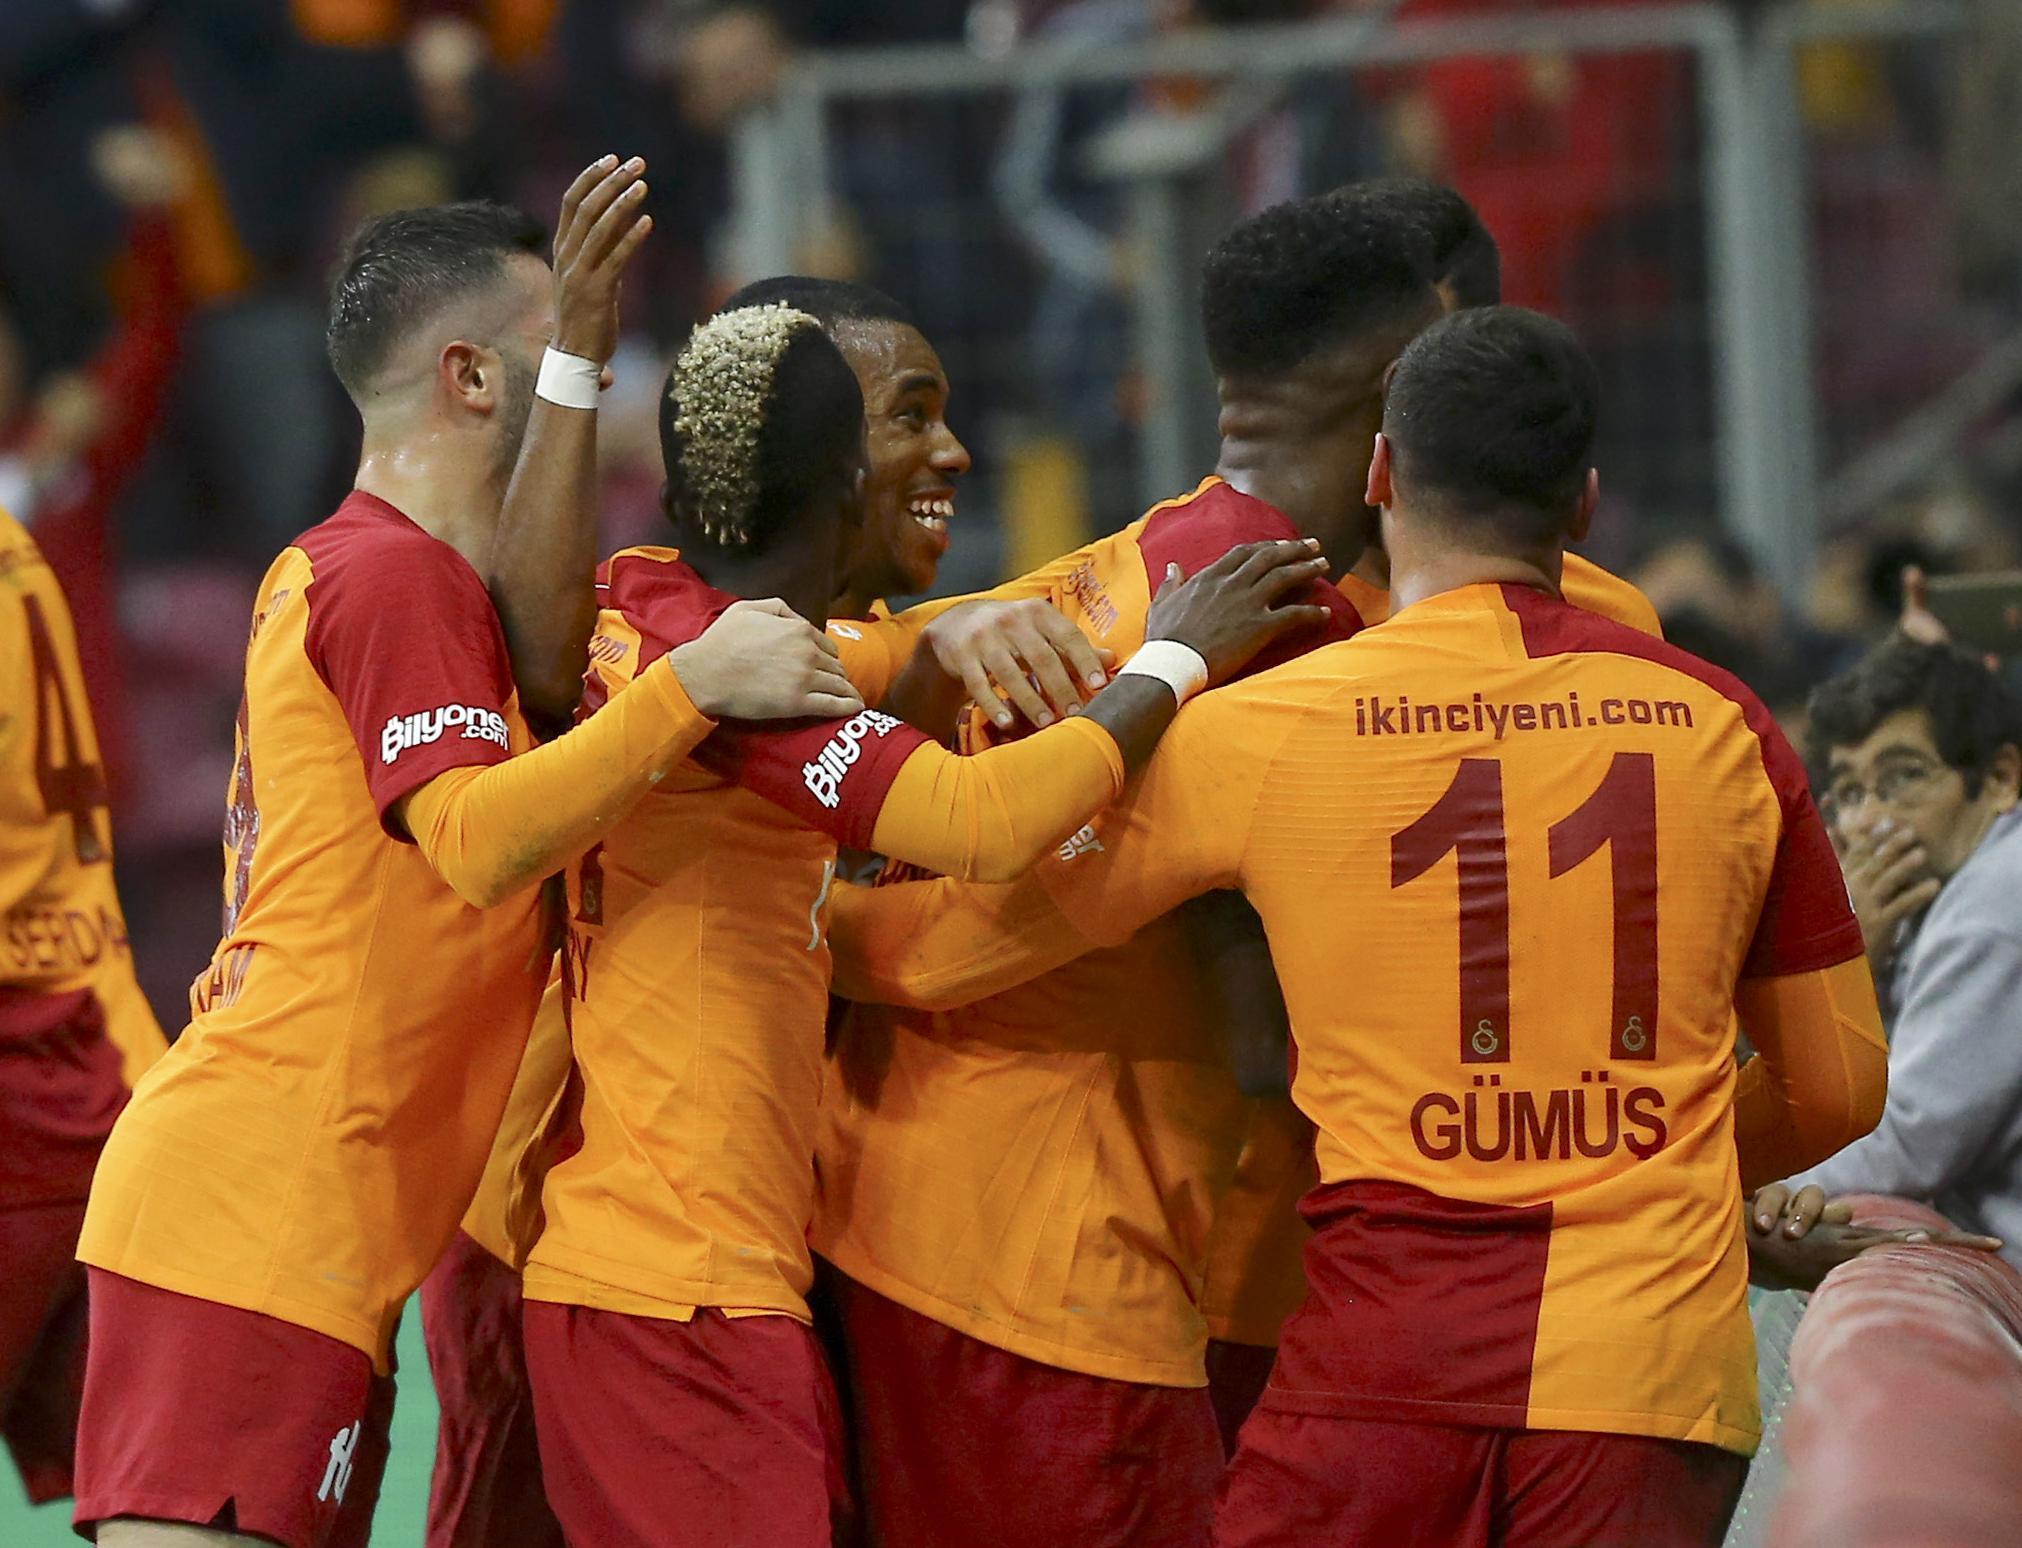 Nefesleri kesen Galatasaray - Fenerbahçe derbisi sona erdi